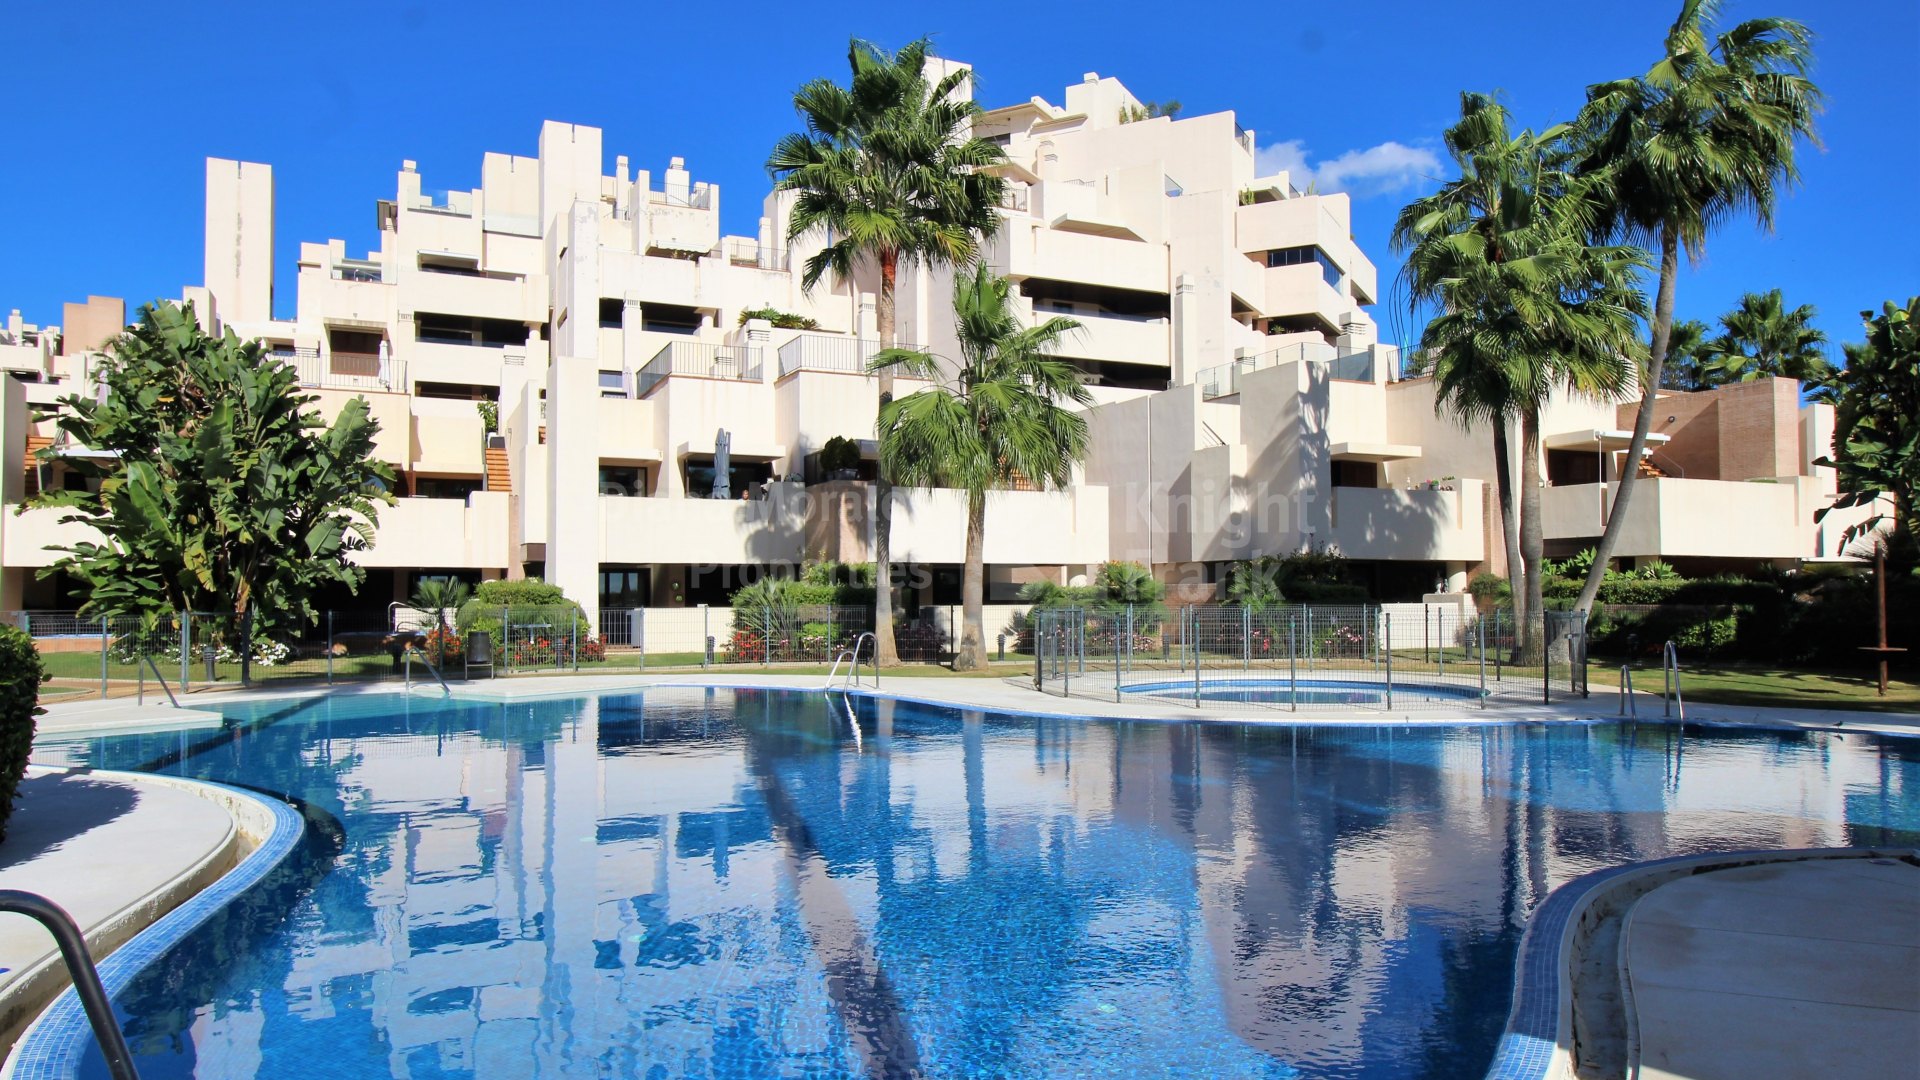 Bahia de la Plata, Frontline beach complex apartment with private pool